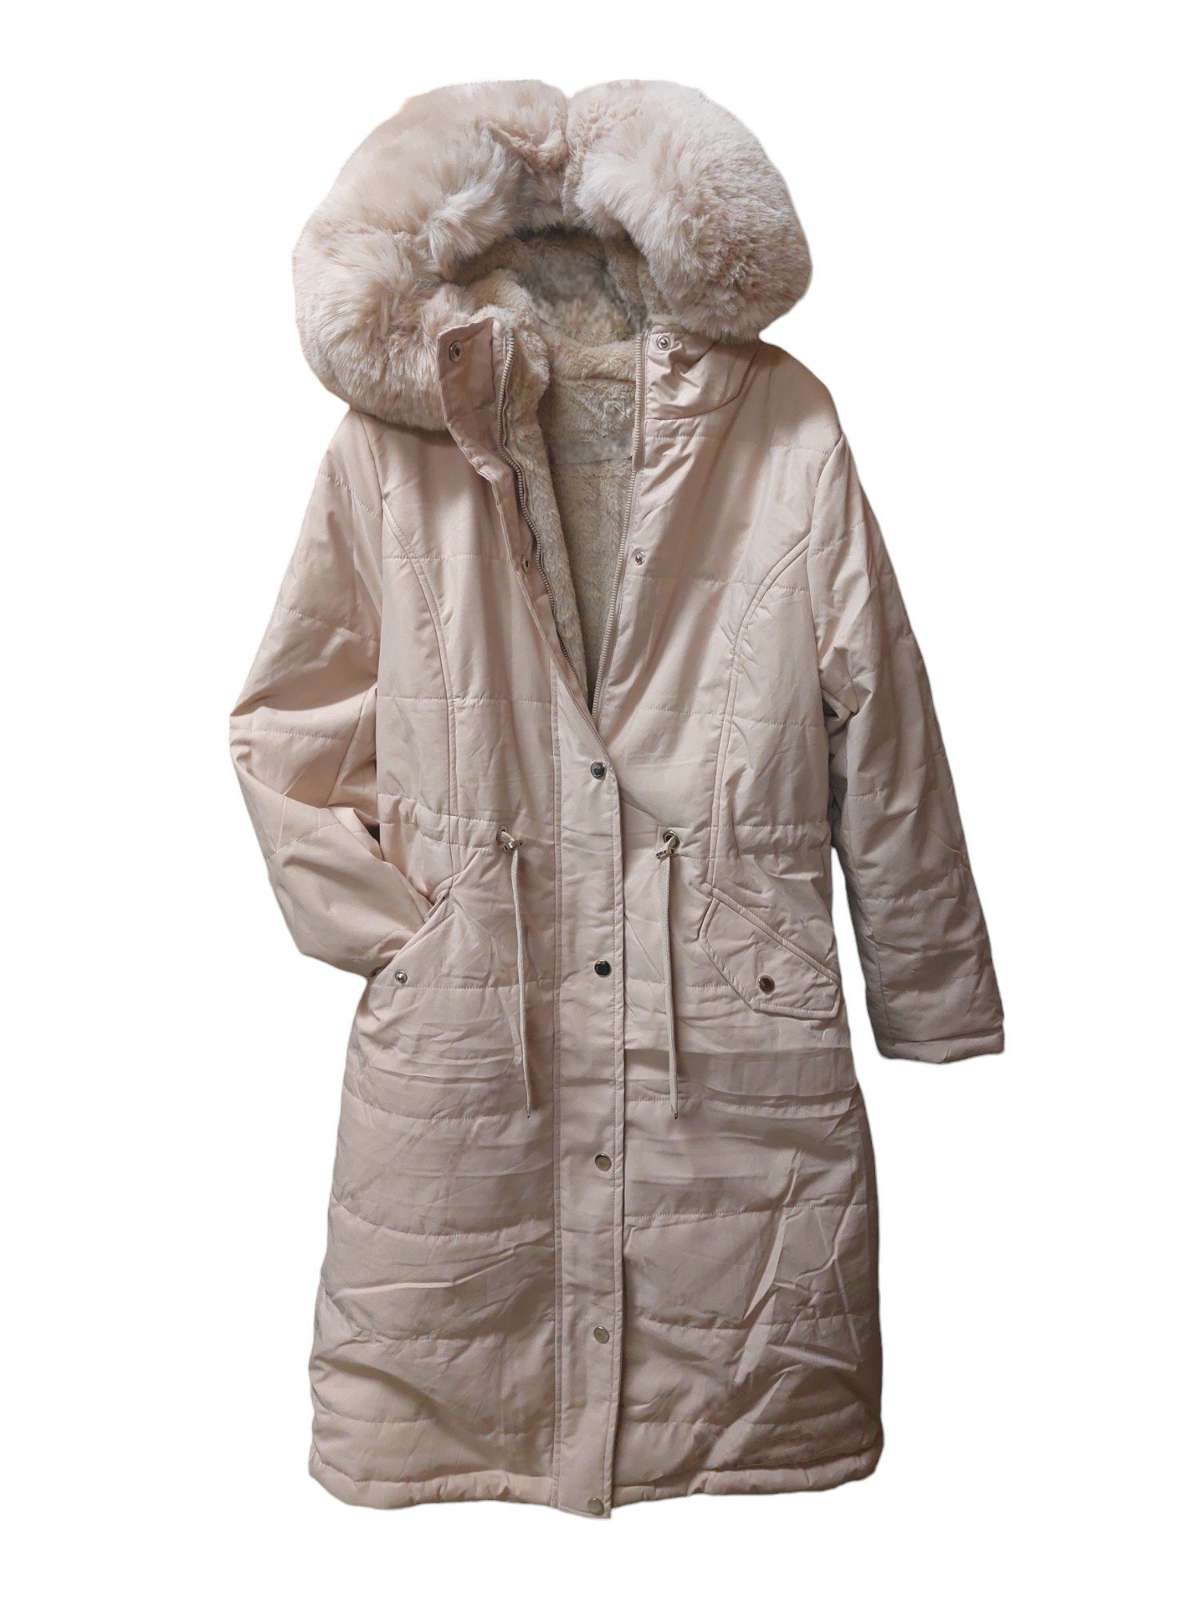 Зимнее пальто, утепленная женская зимняя парка, на полной подкладке, с водоотталкивающим капюшоном.